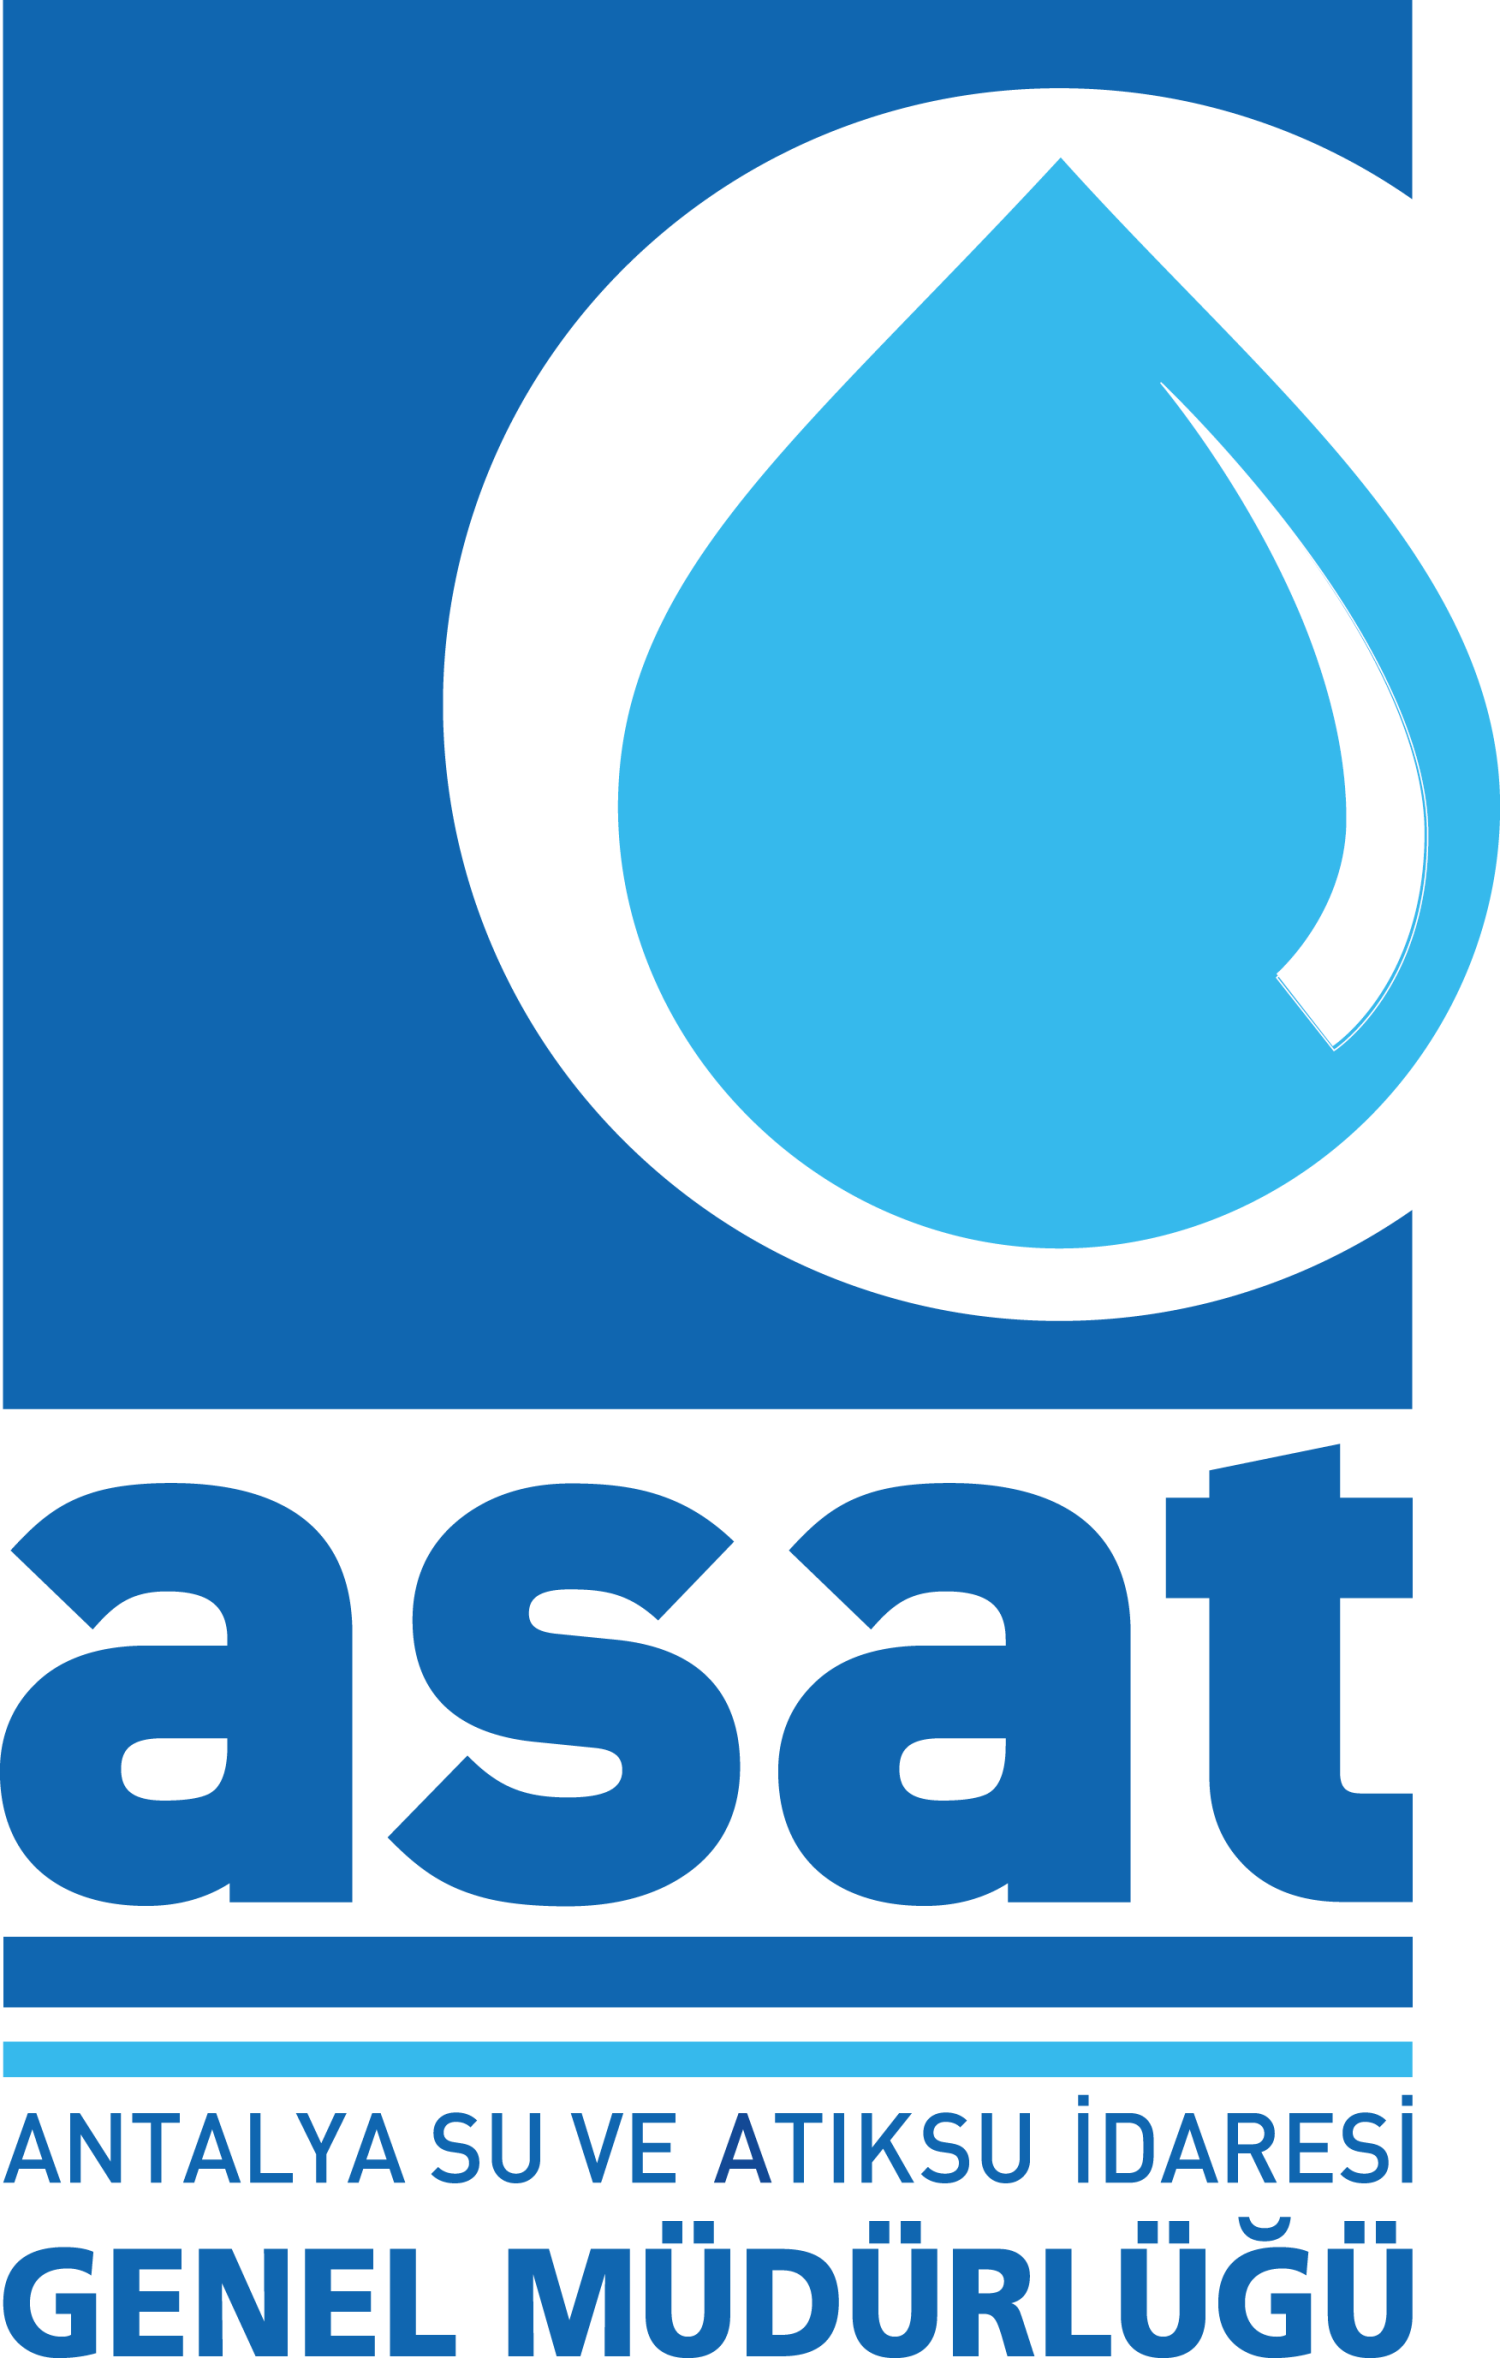 AntalyaAsat